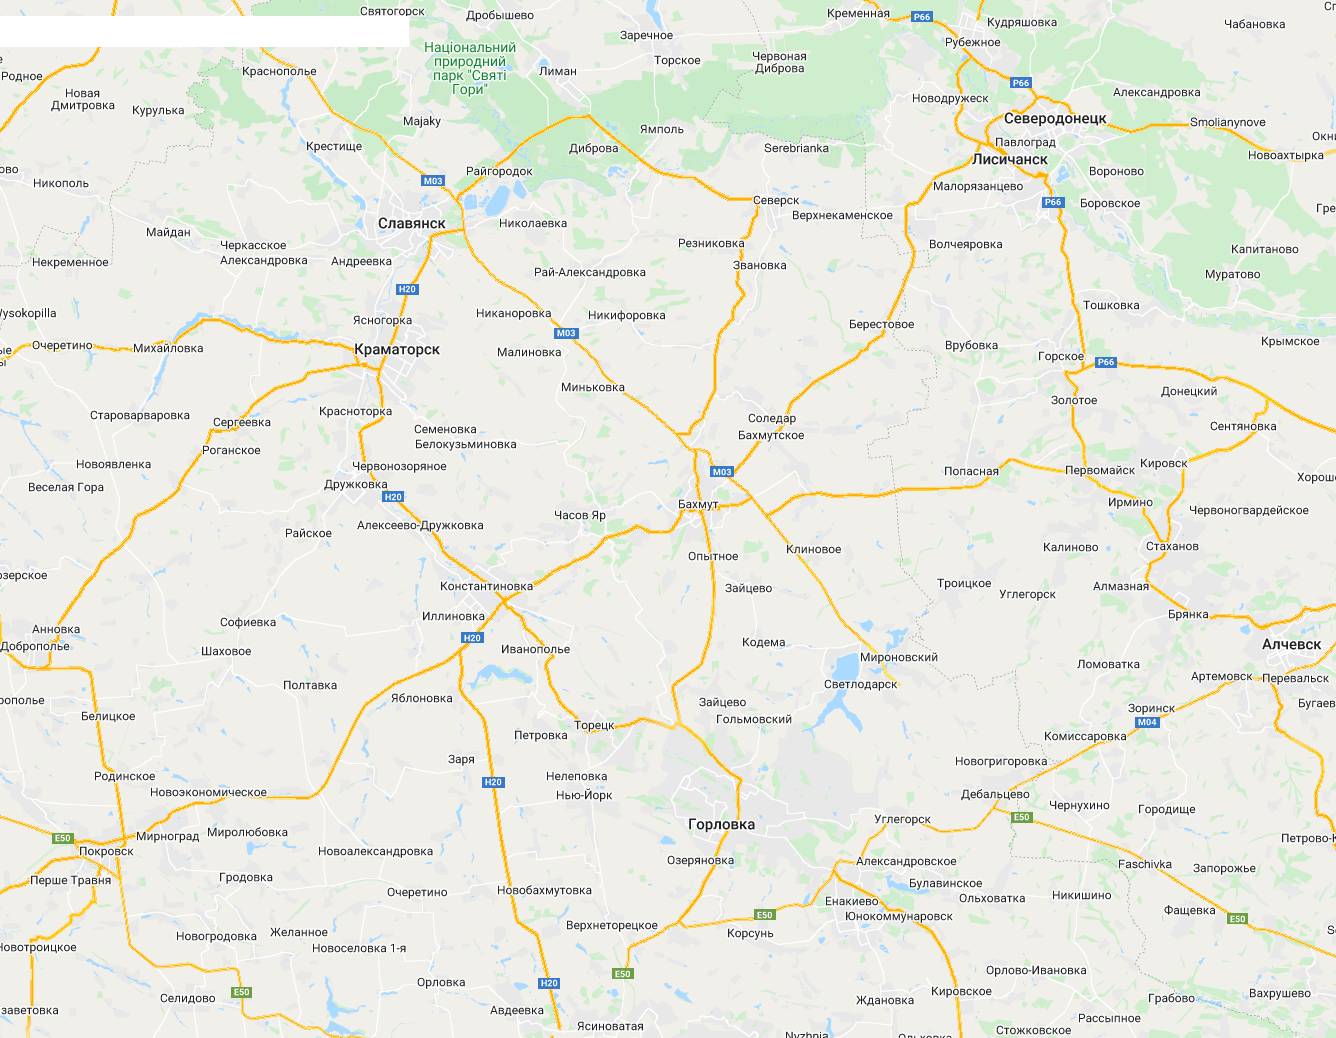 Карта дорог в районе Северодонецка